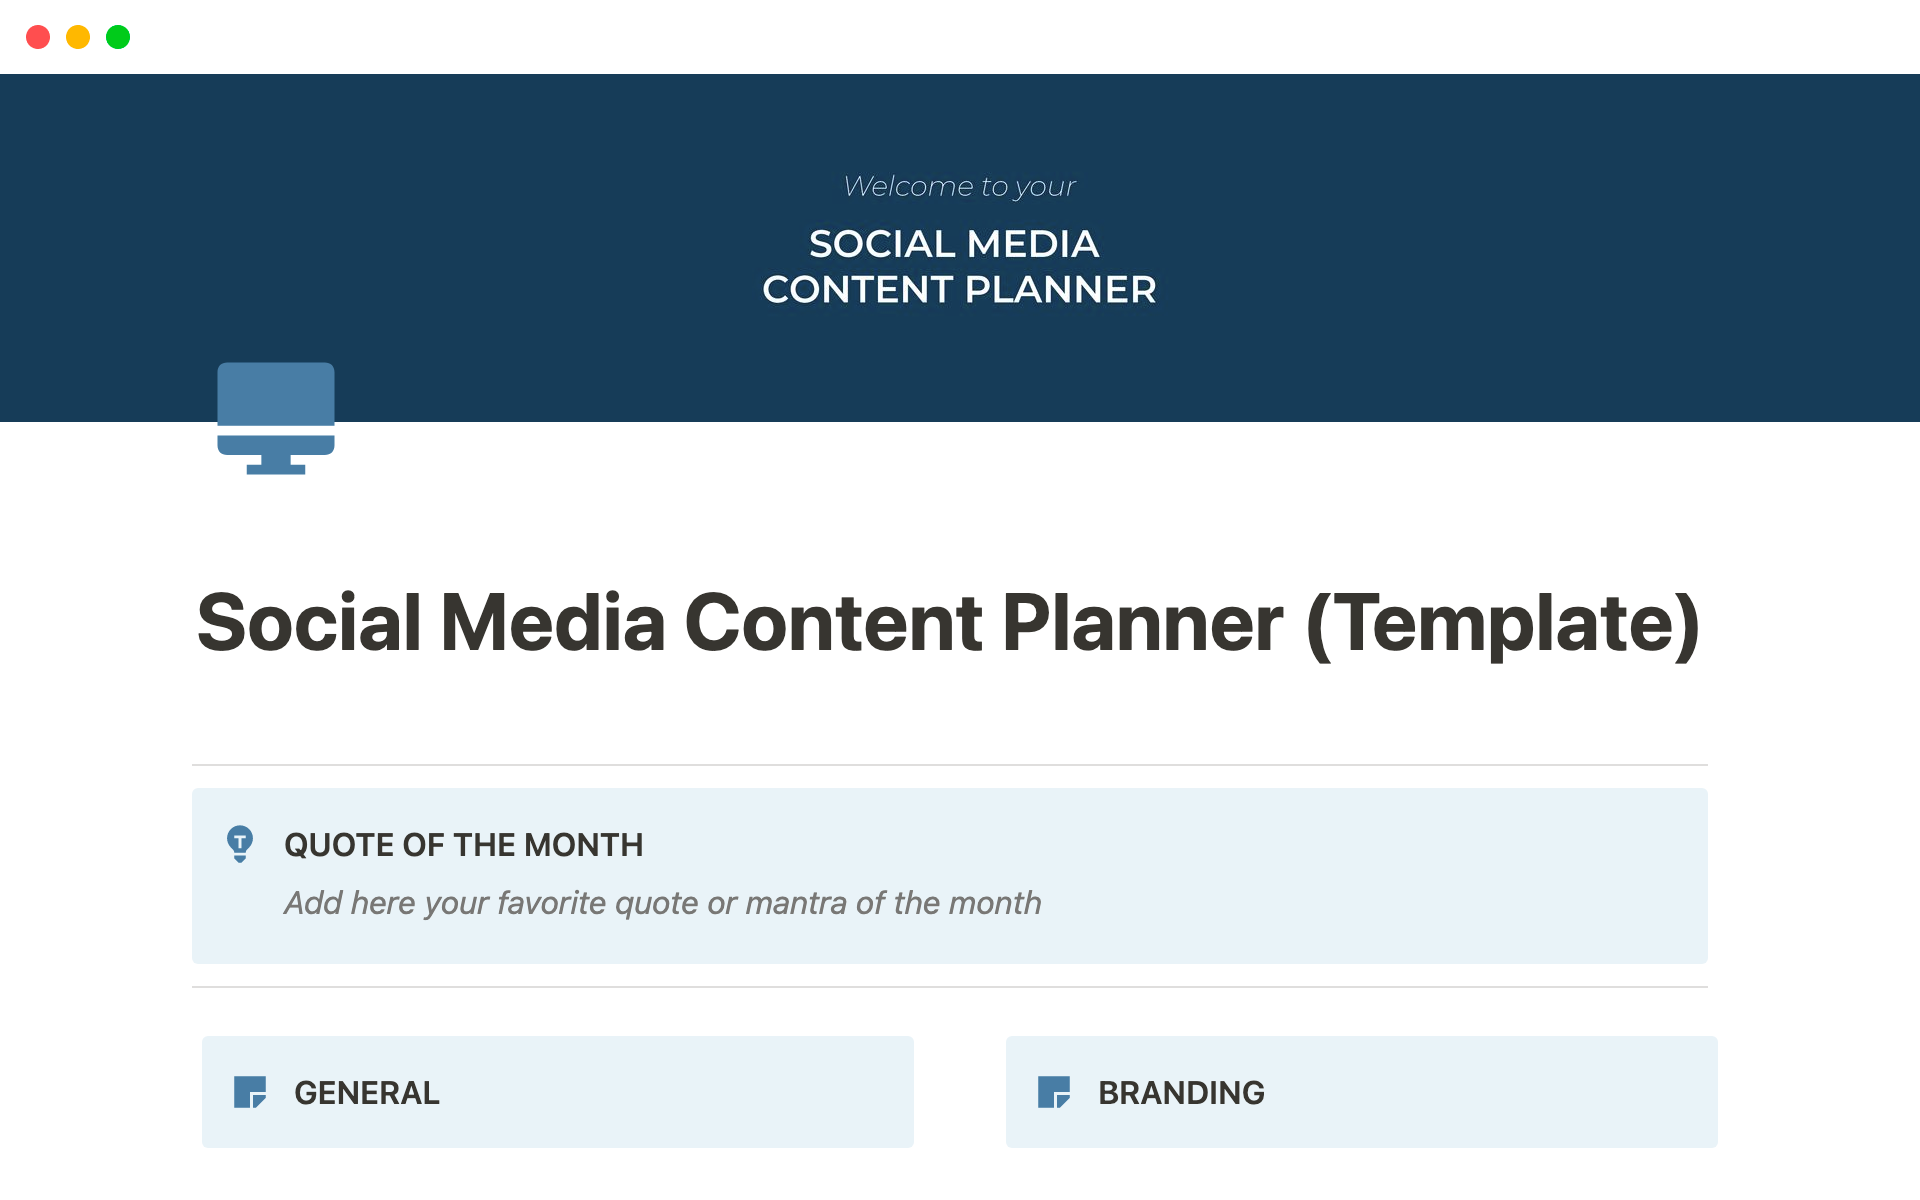 Uma prévia do modelo para Social Media Content Planner: Unleash your social media potential with our content planner!